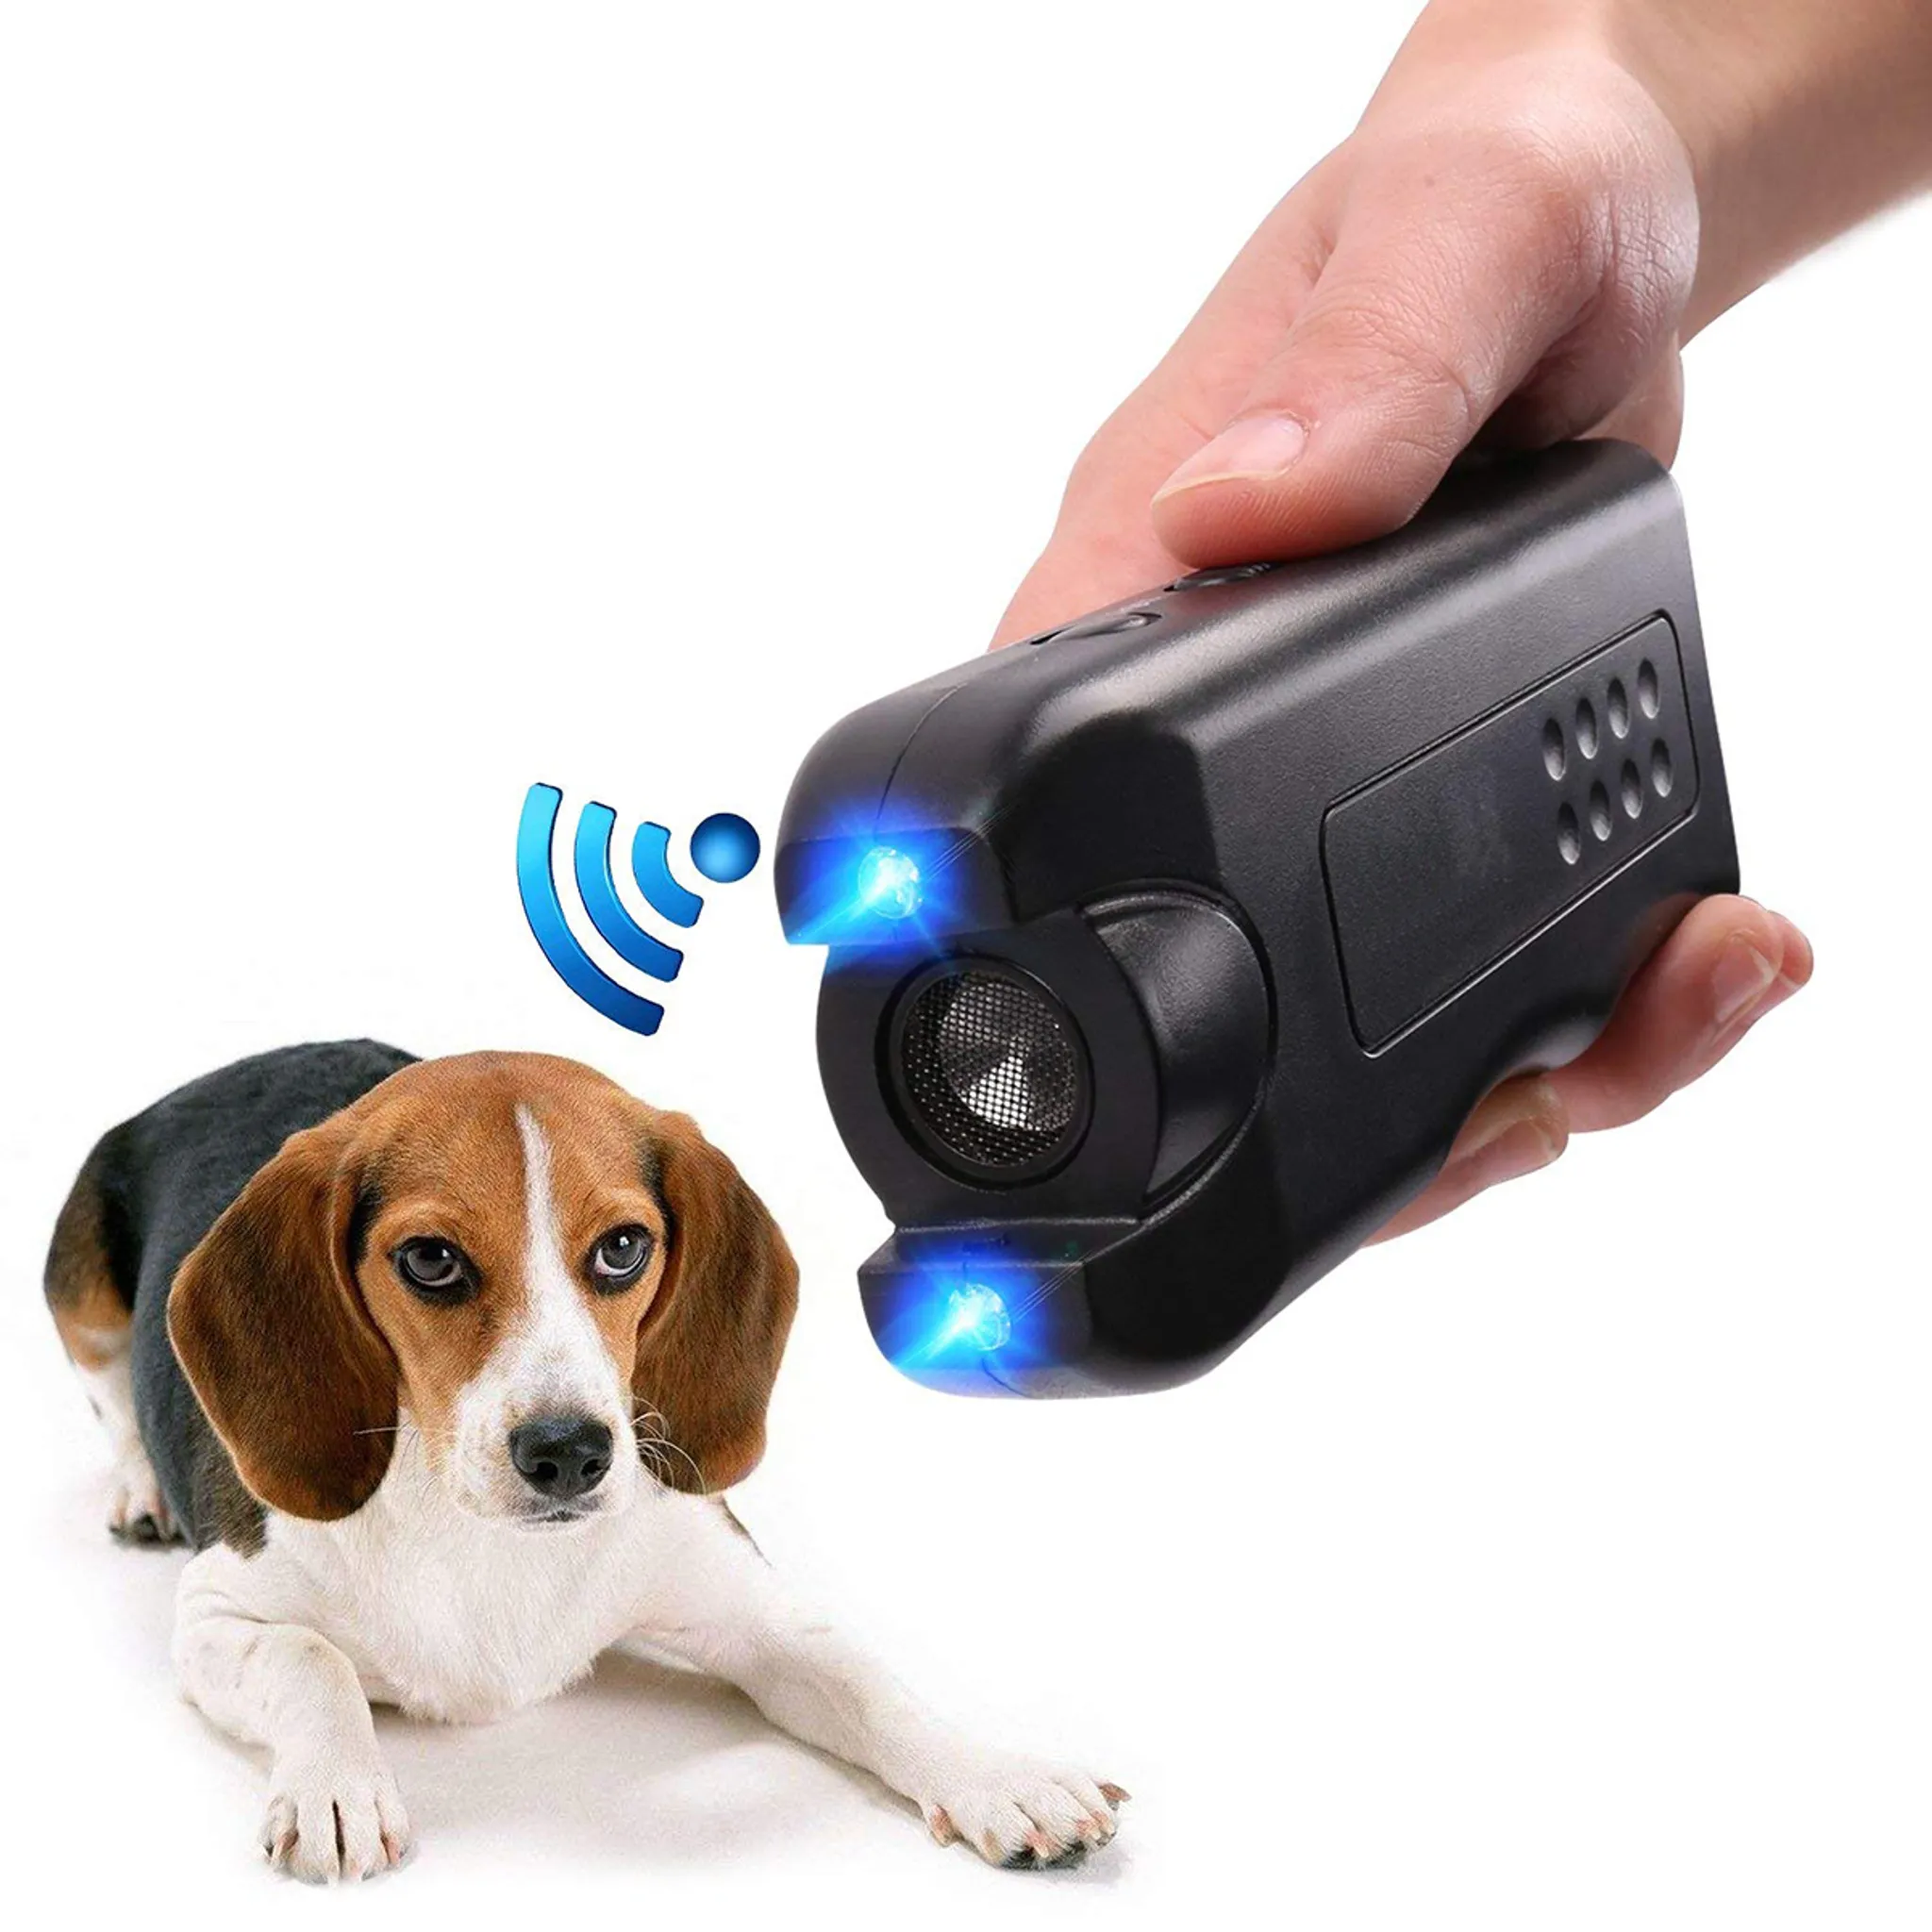 Trainingsgerät Marsyen Ultraschall-Hundetrainer elektronisches Hundeschreck / Hunde-Bellkontrollgerät Ultraschall geeignet für Außen- und Innenbereich Hundevertreiber stoppt Bellen 